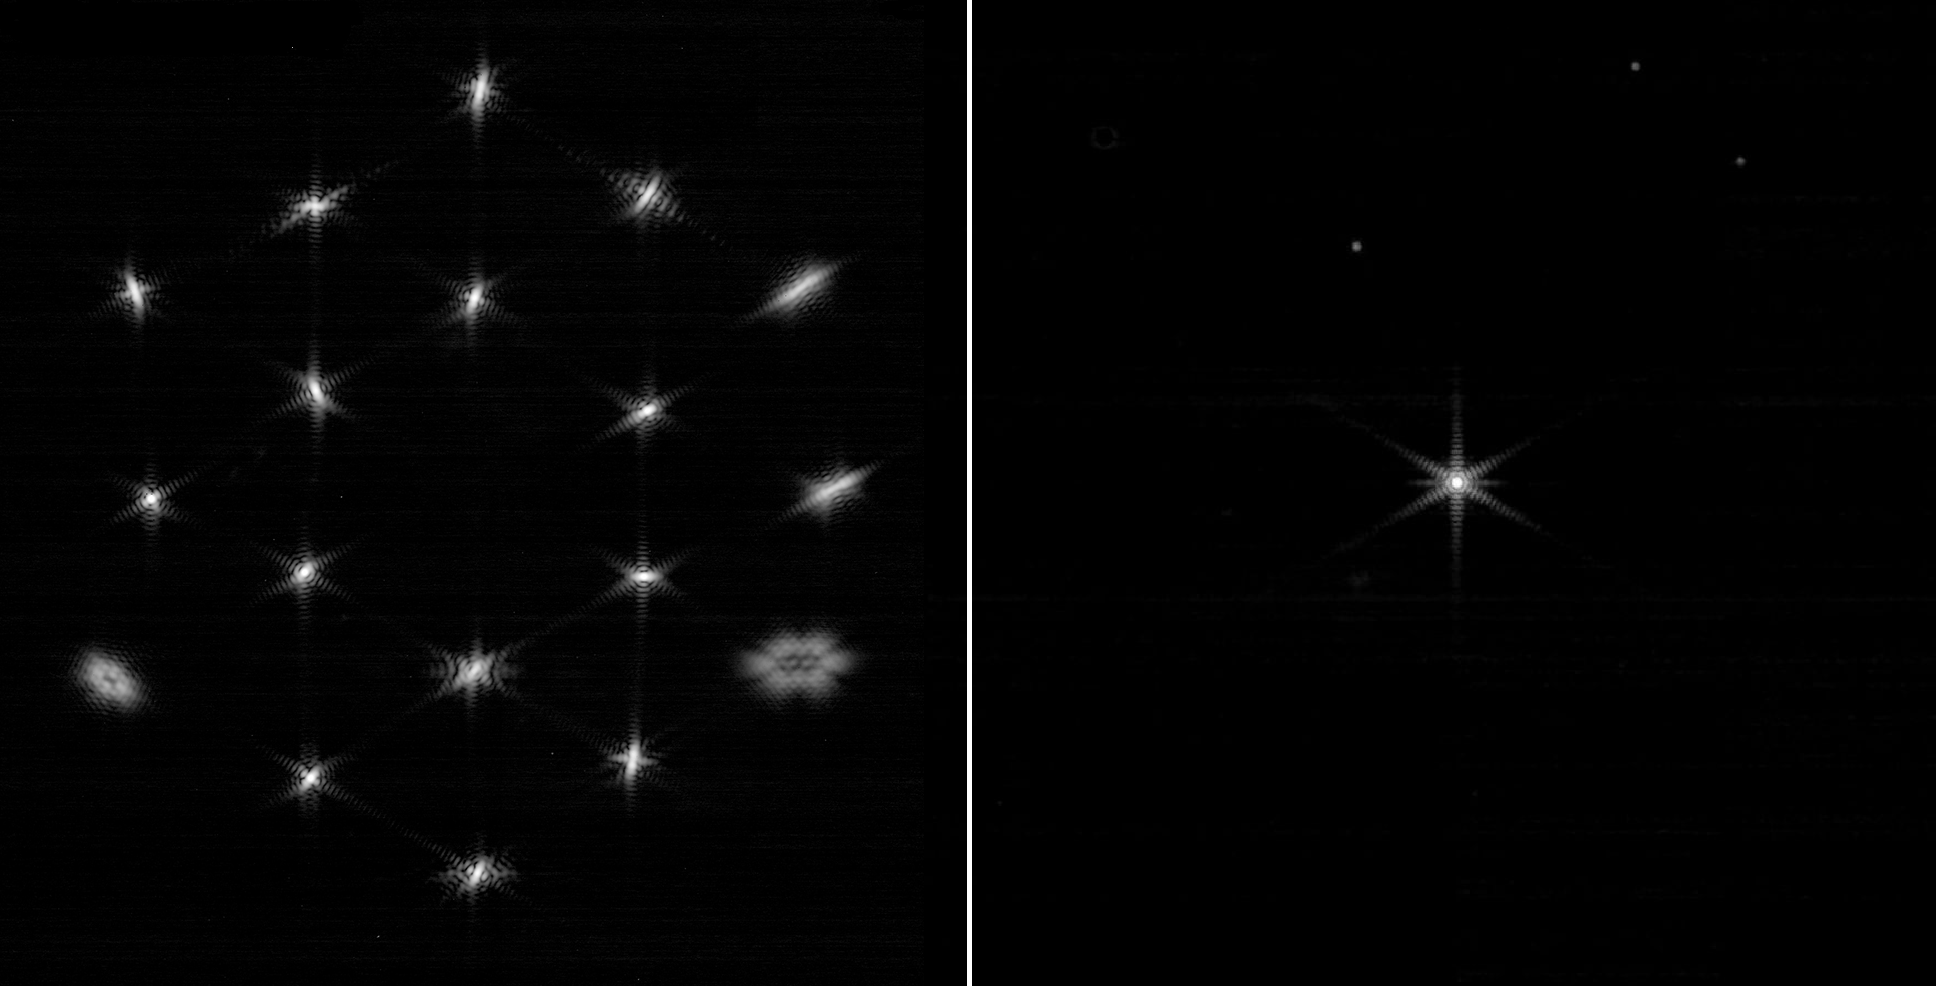 Process of aligning the James Webb image. Credit: NASA